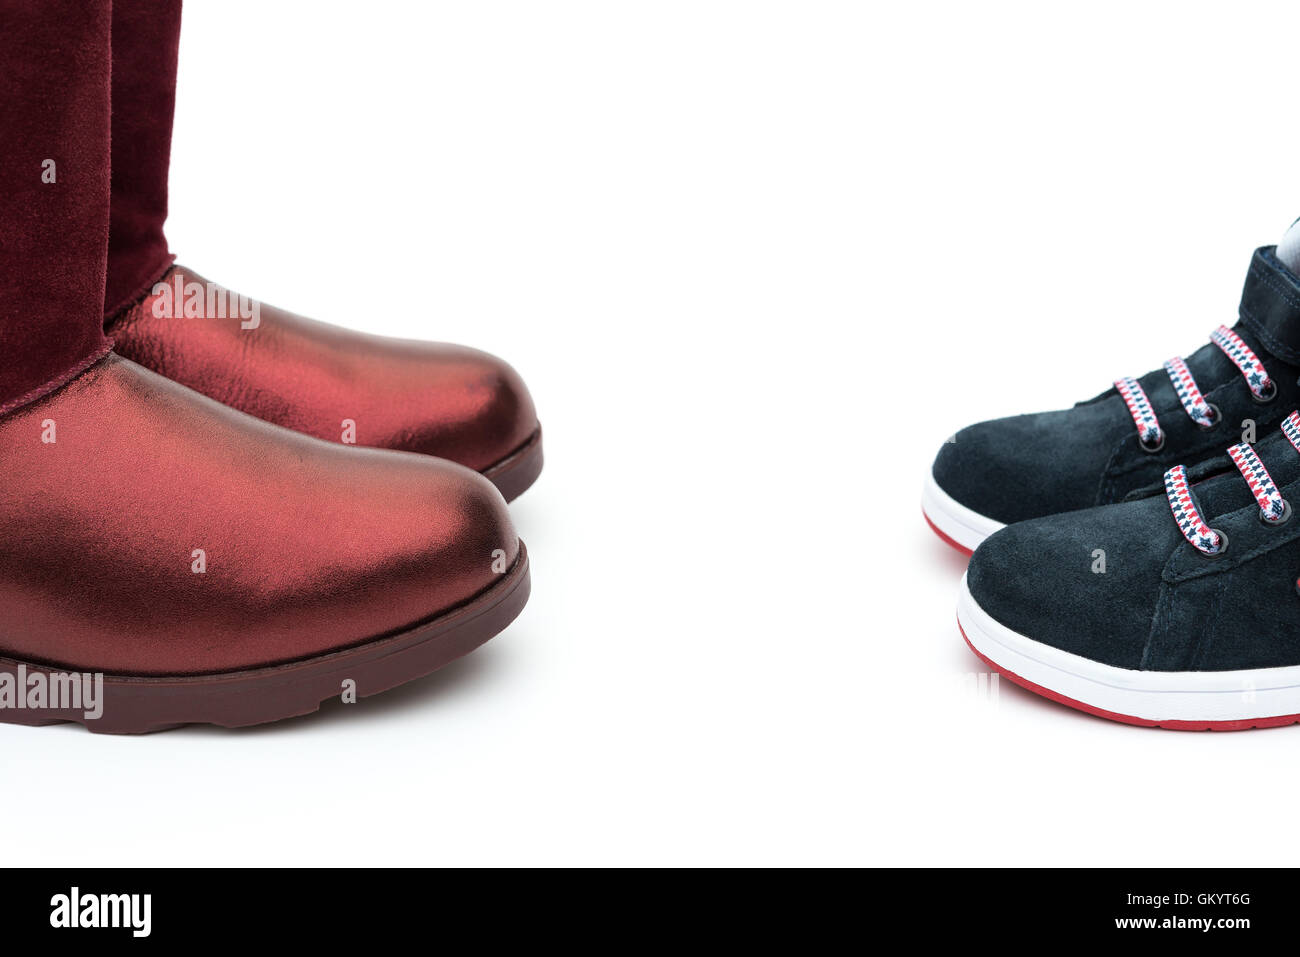 schwarze Schuhe für Sohn und roten für Mama auf weiß als Abstammung Konzept Stockfoto